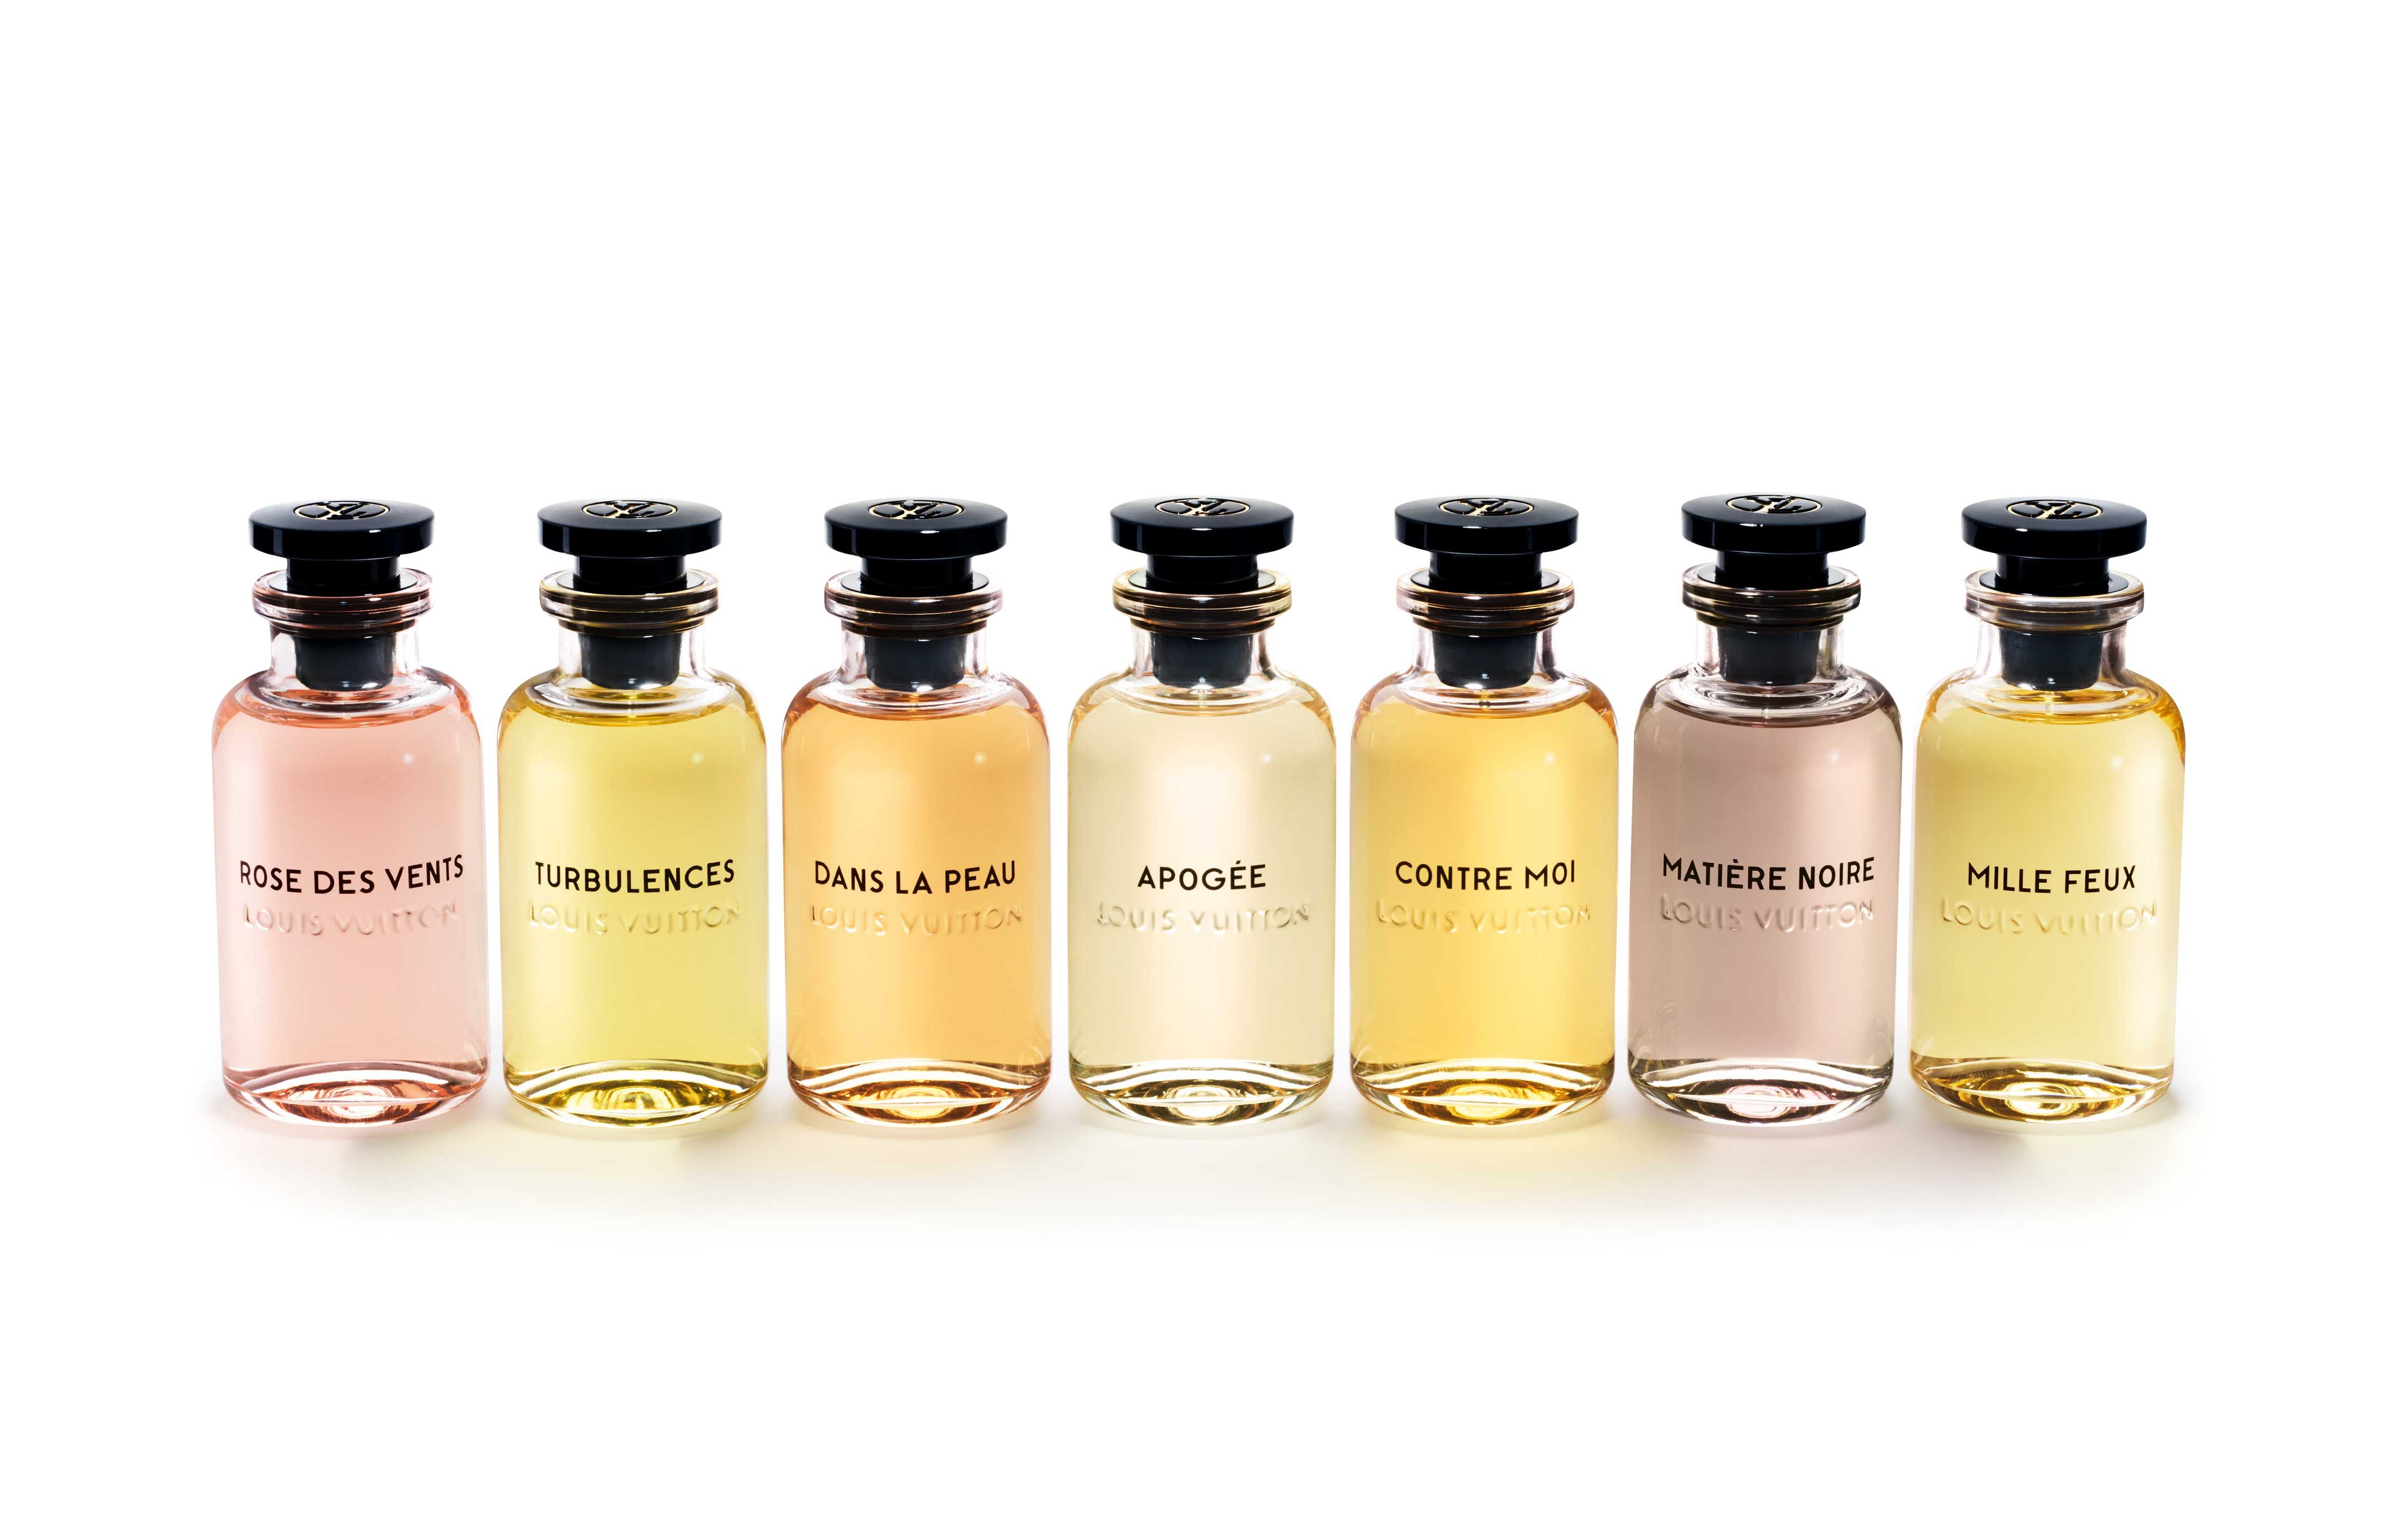 Buy Louis Vuitton Women Fragrances for sale online